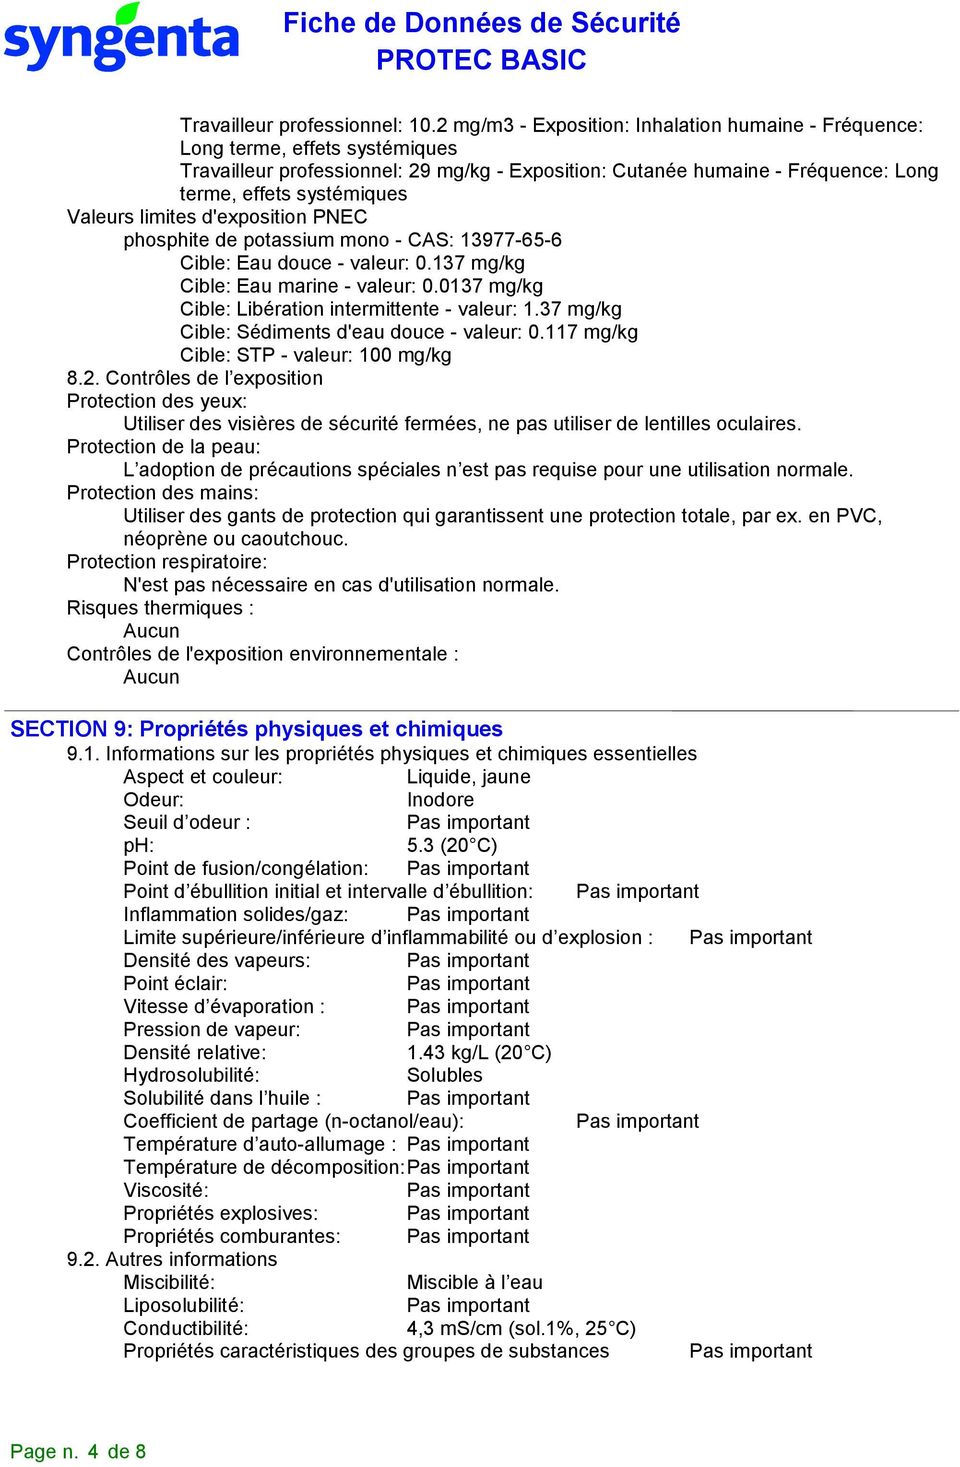 Valeurs limites d'exposition PNEC phosphite de potassium mono - CAS: 13977-65-6 Cible: Eau douce - valeur: 0.137 mg/kg Cible: Eau marine - valeur: 0.